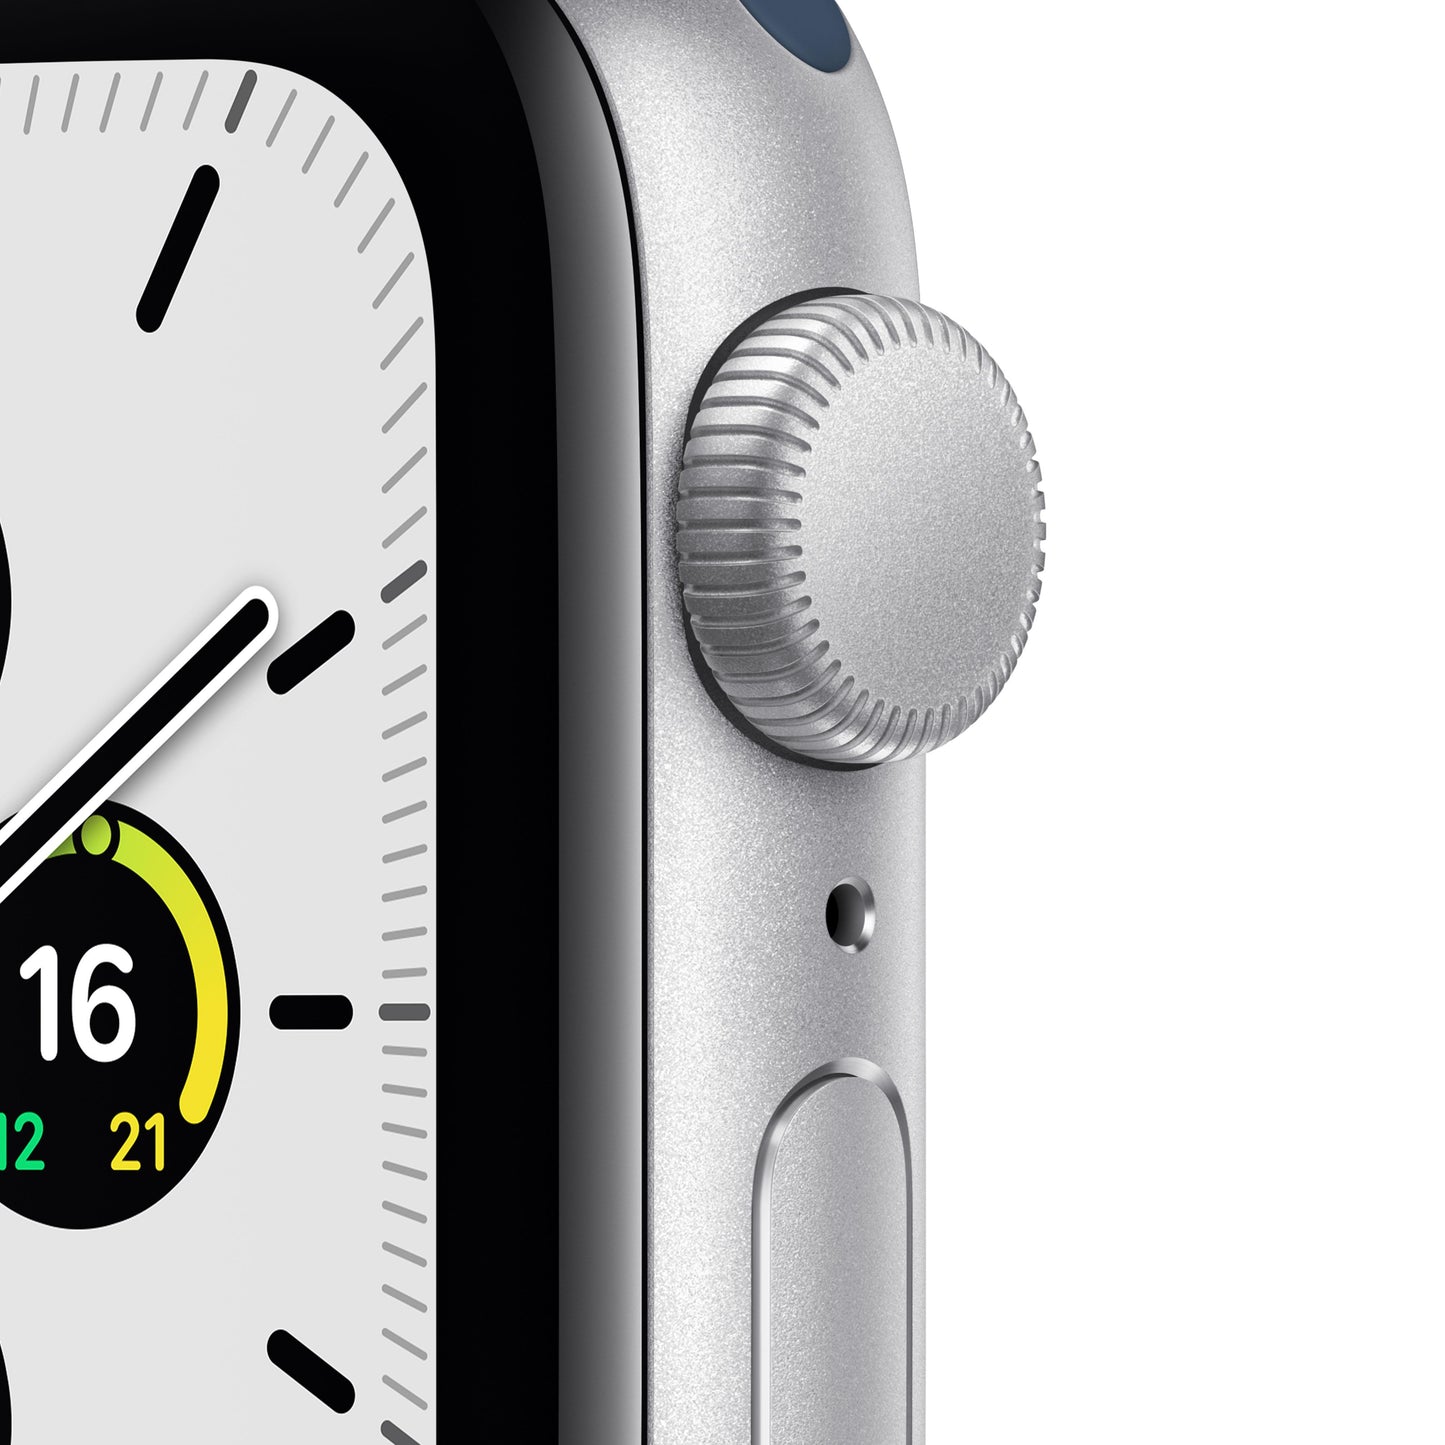 Apple Watch SE (GPS) - Caja de aluminio en plata de 40 mm - Correa deportiva en color abismo - Talla única